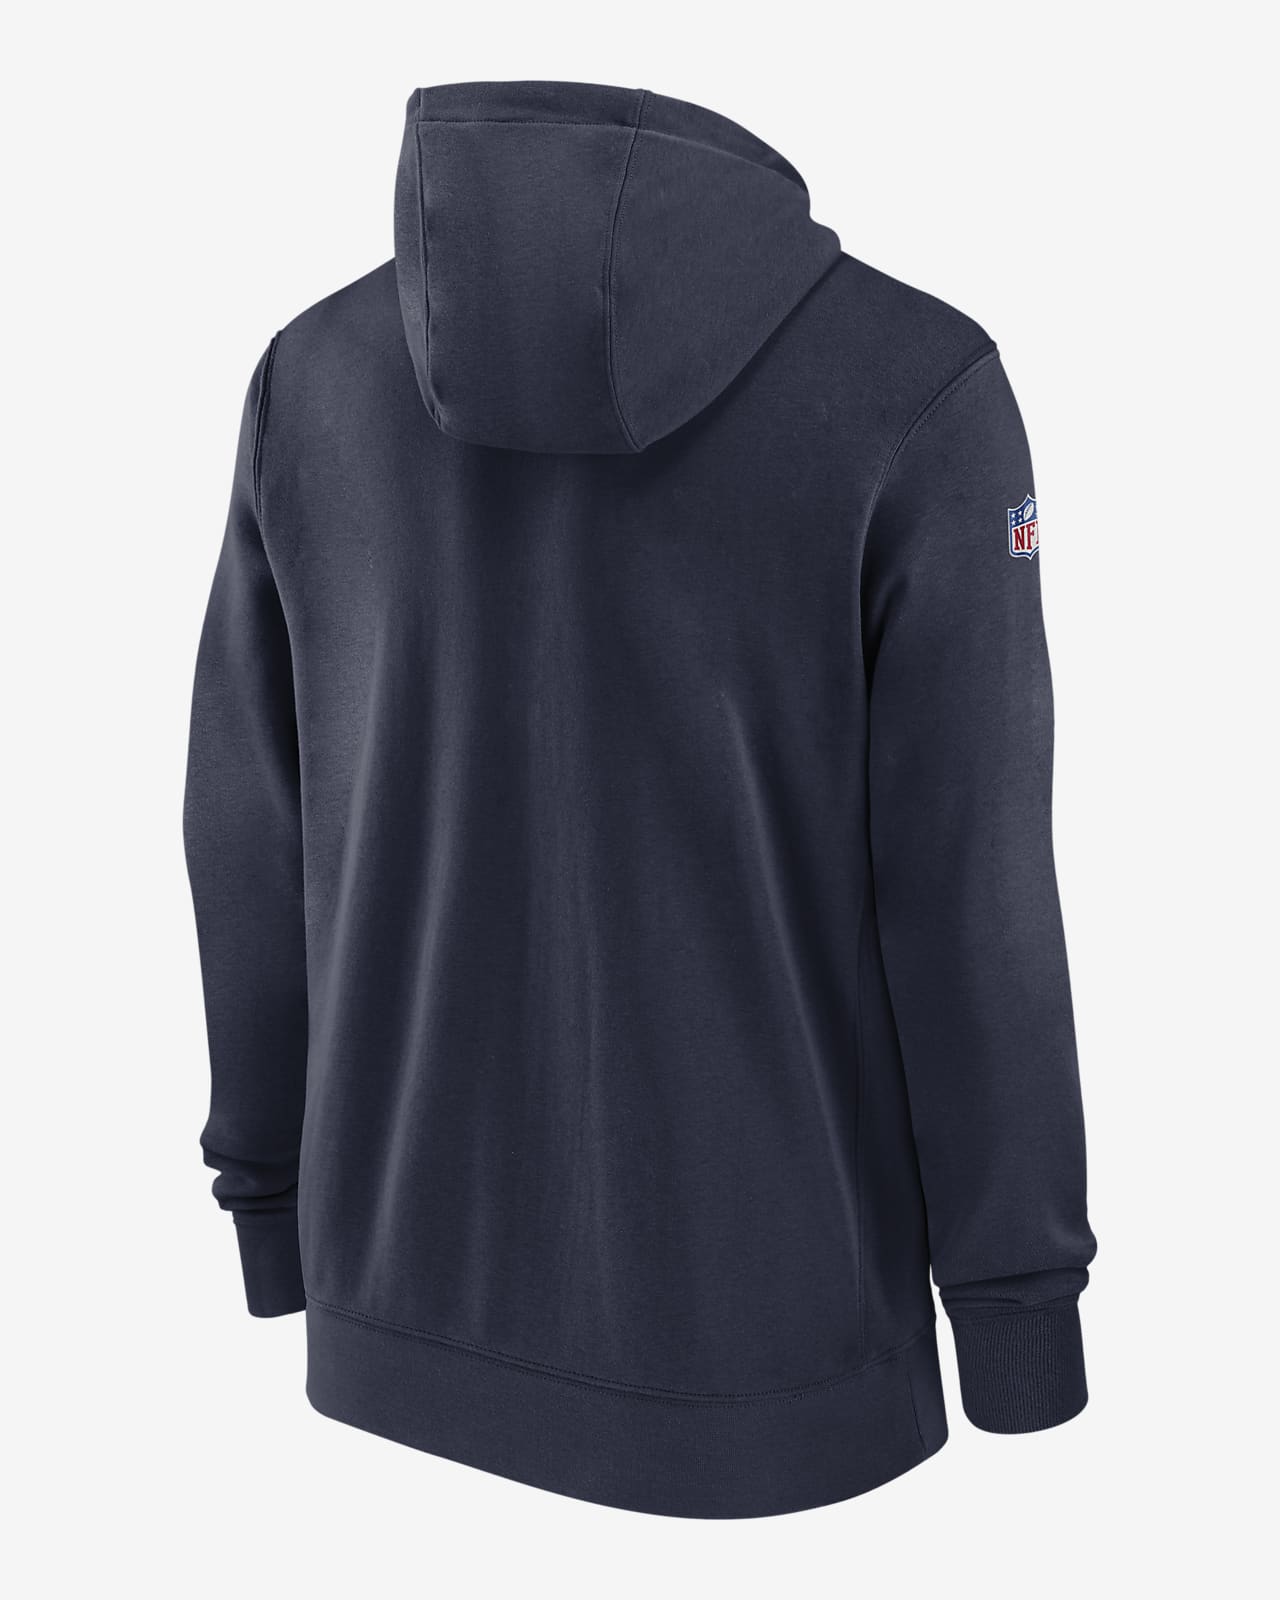 New England Patriots Sideline Club Men's Nike NFL Full-Zip Hoodie.